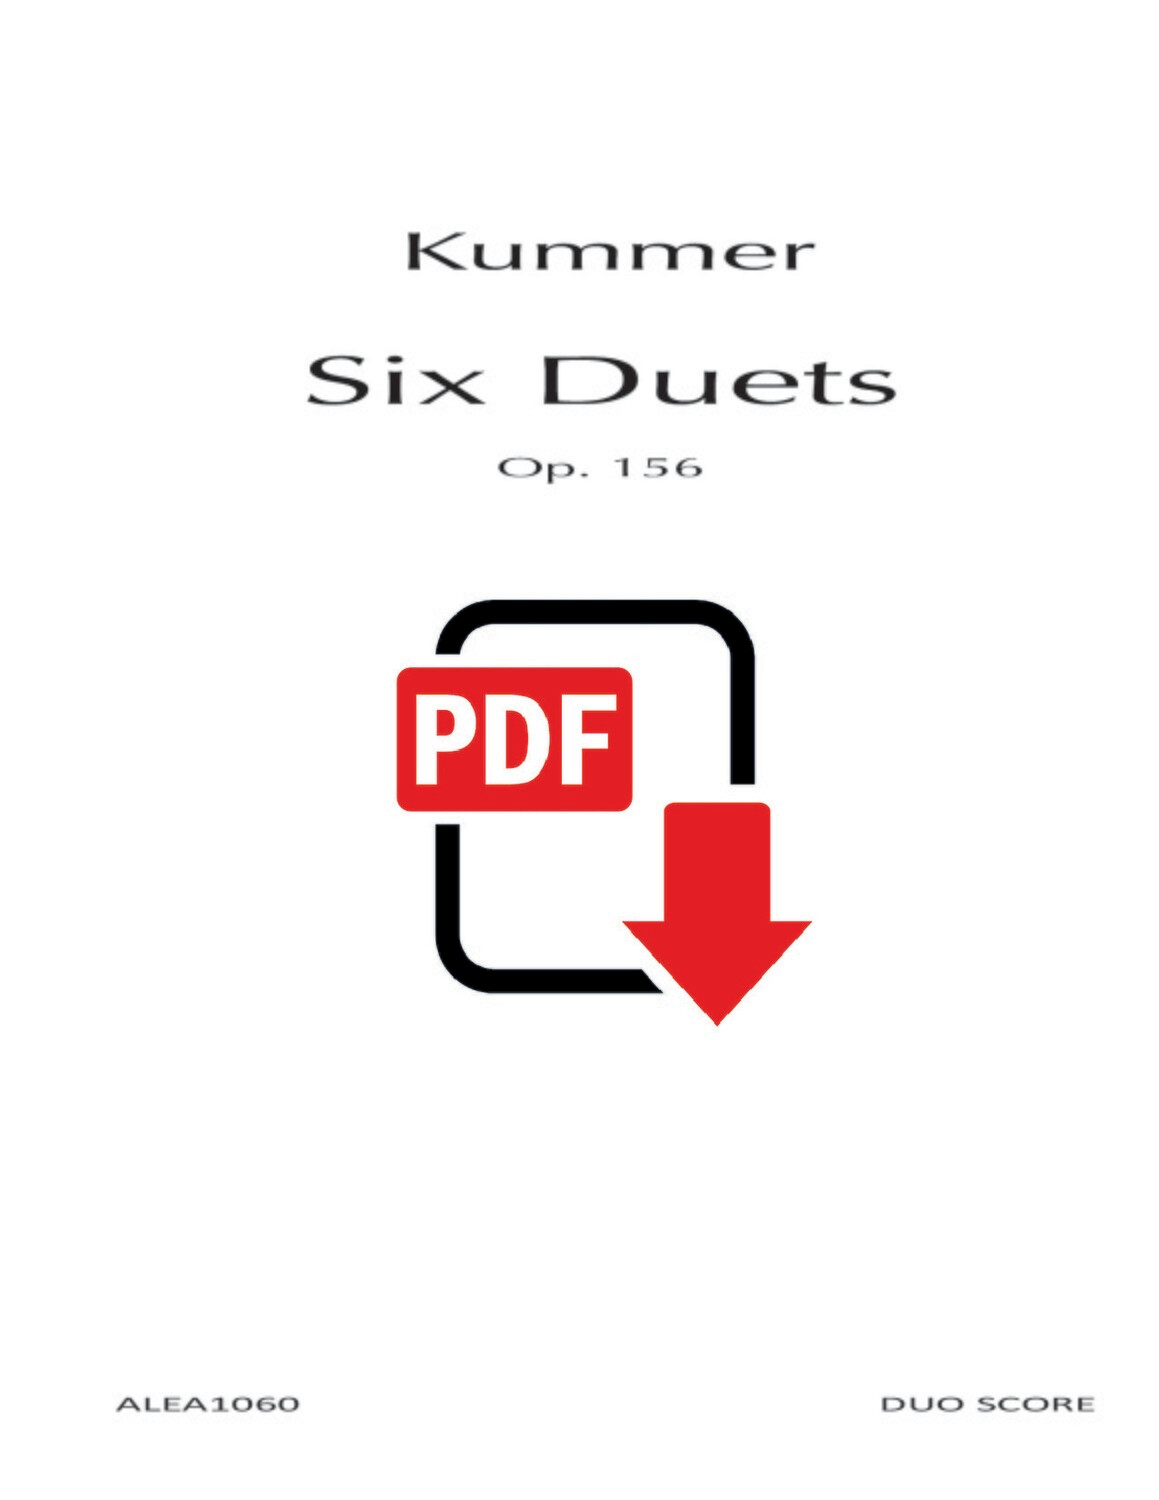 Kummer: Six Duets Op.156 (PDF)